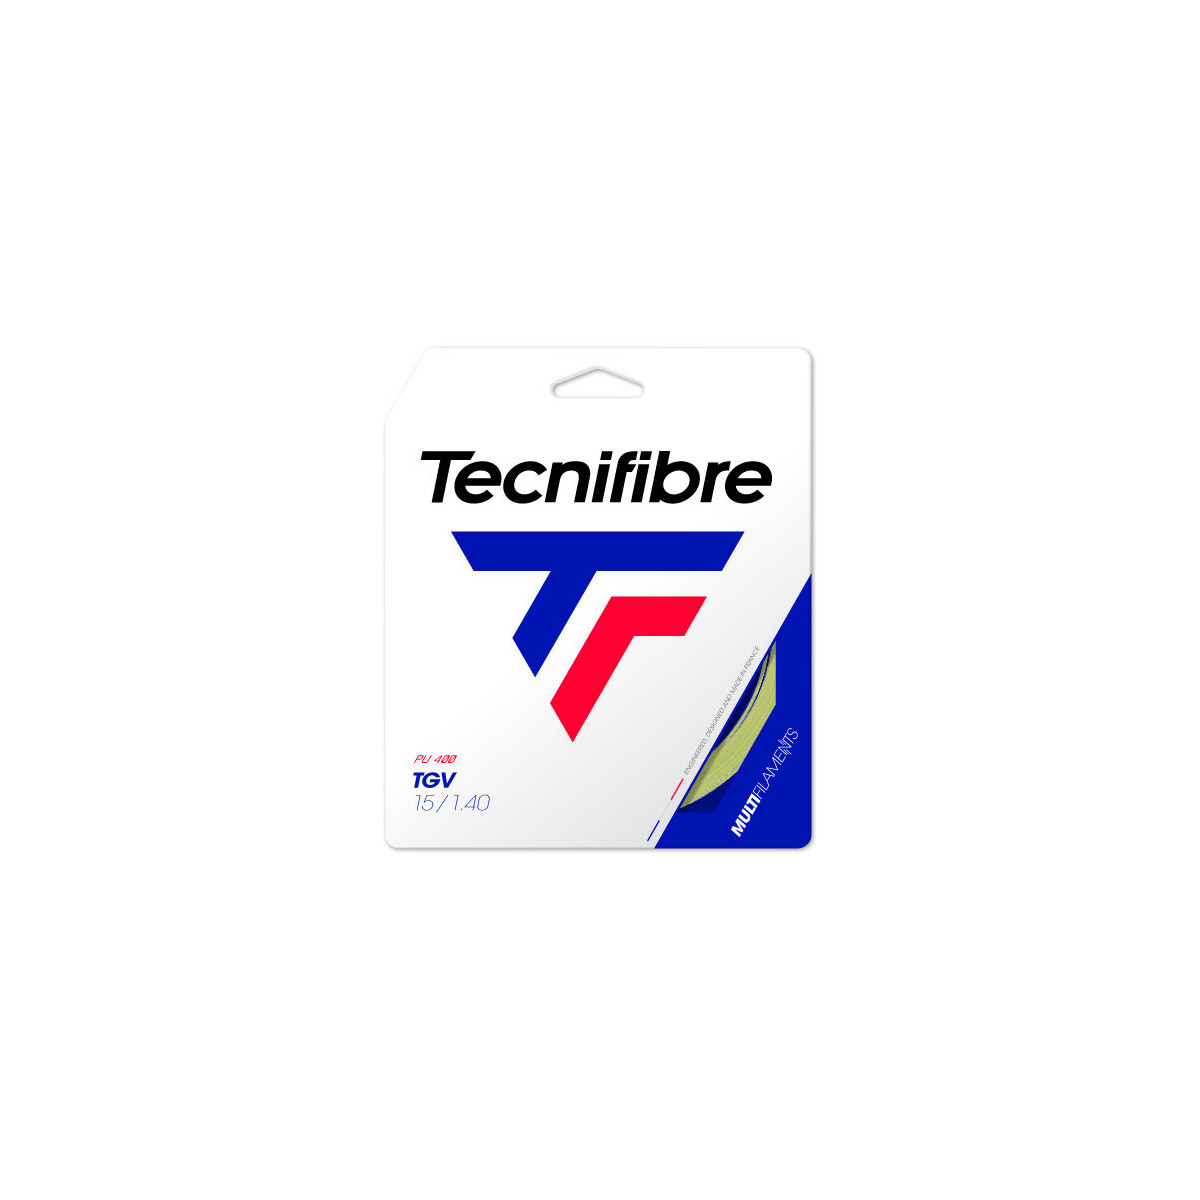 Tecnifibre TGV 140 Natural Trim - 